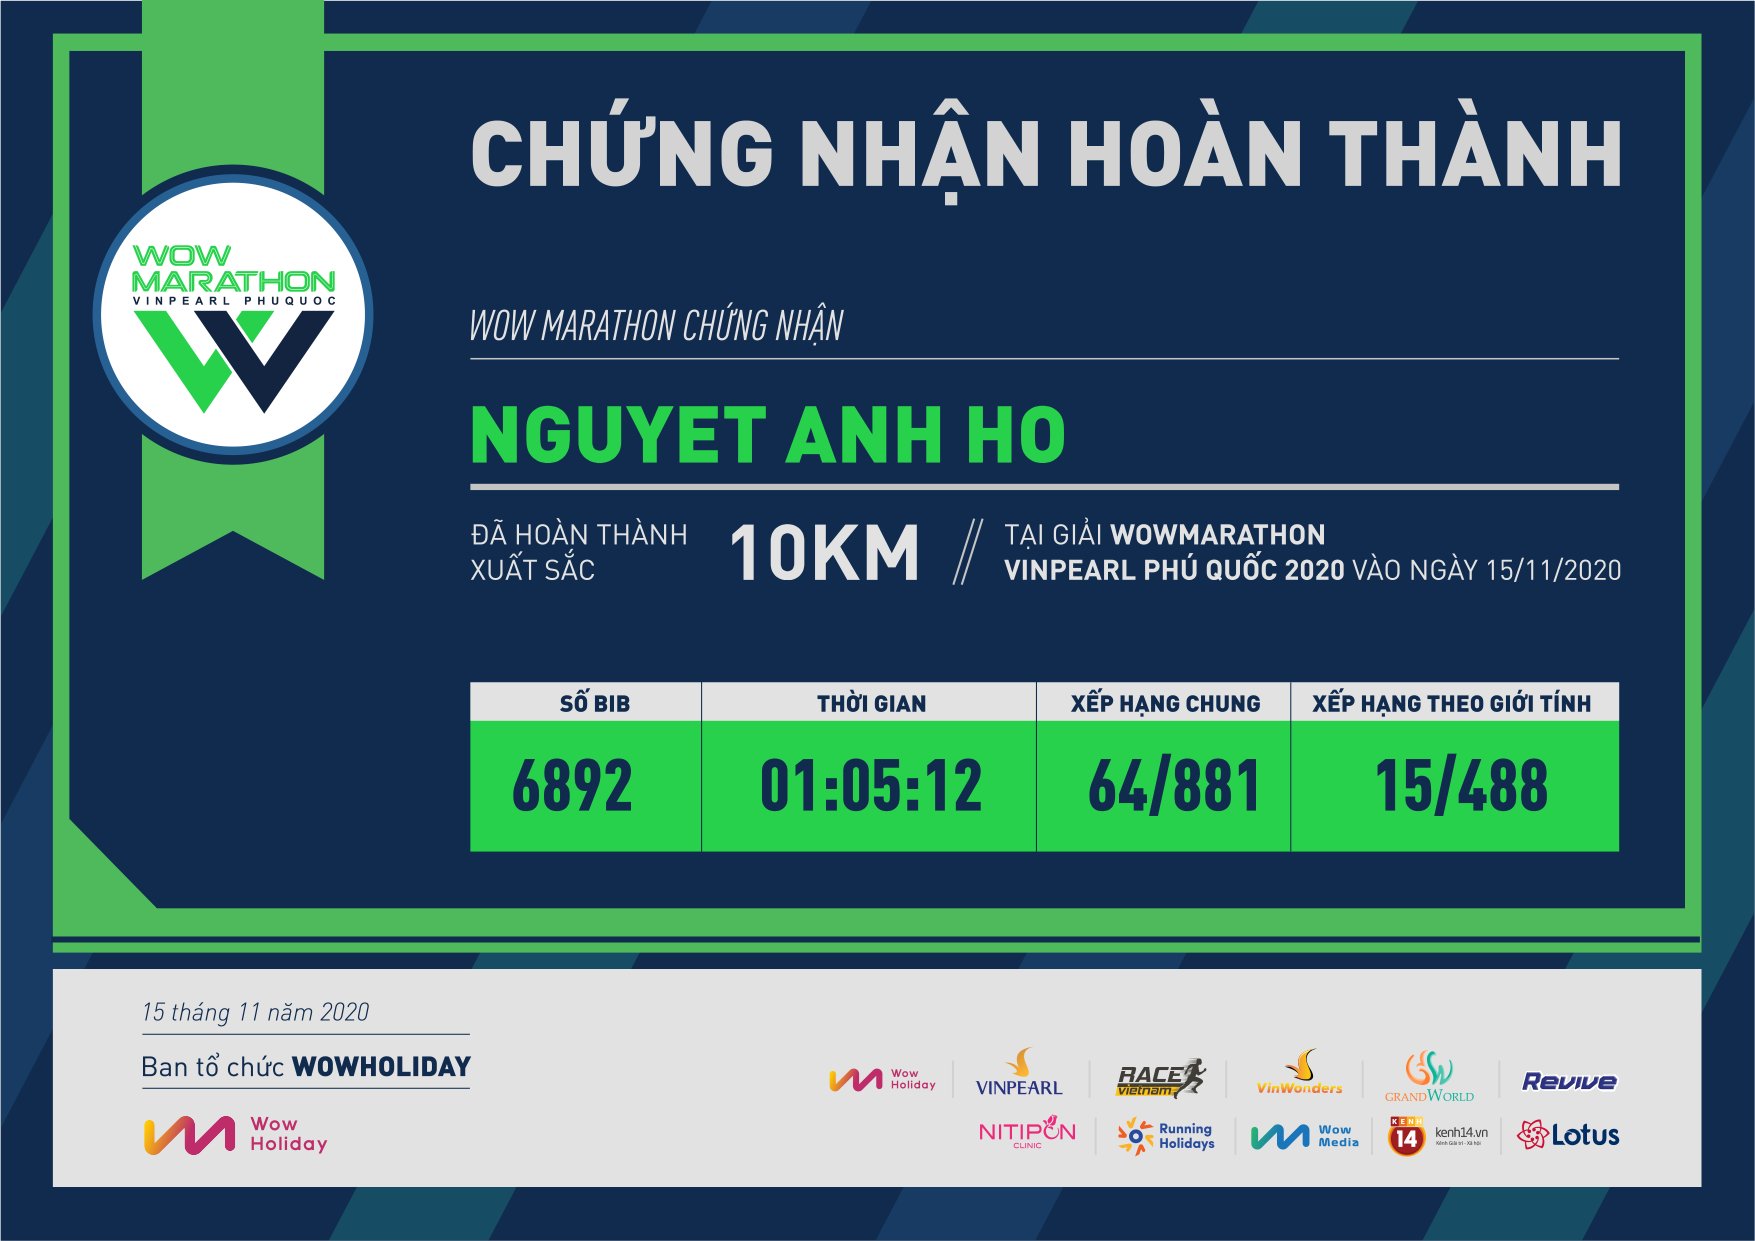 6892 - Nguyet Anh Ho